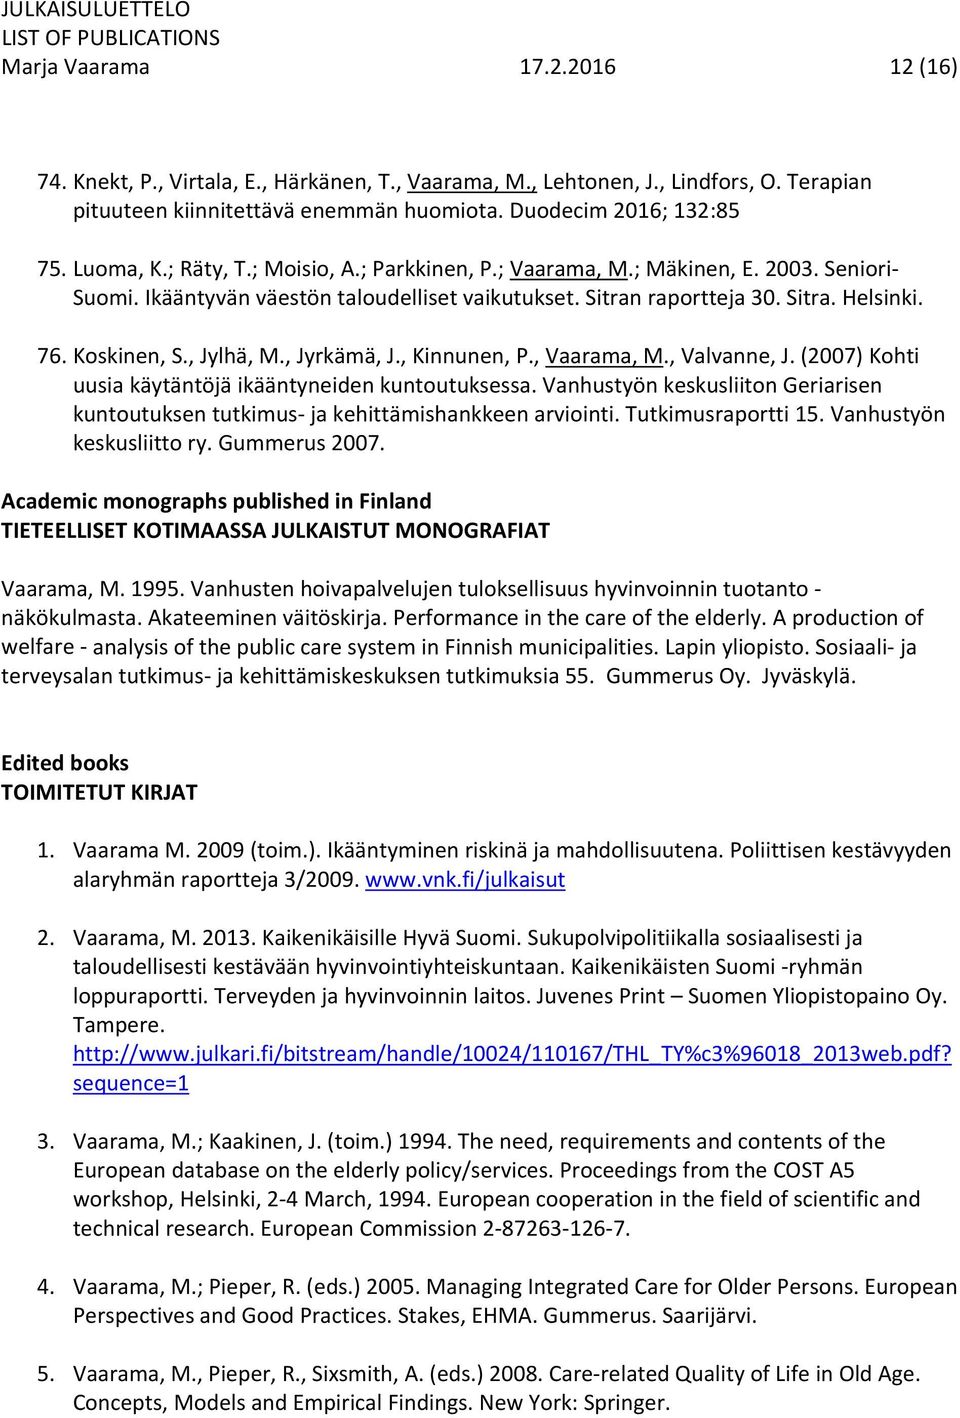 , Jyrkämä, J., Kinnunen, P., Vaarama, M., Valvanne, J. (2007) Kohti uusia käytäntöjä ikääntyneiden kuntoutuksessa.